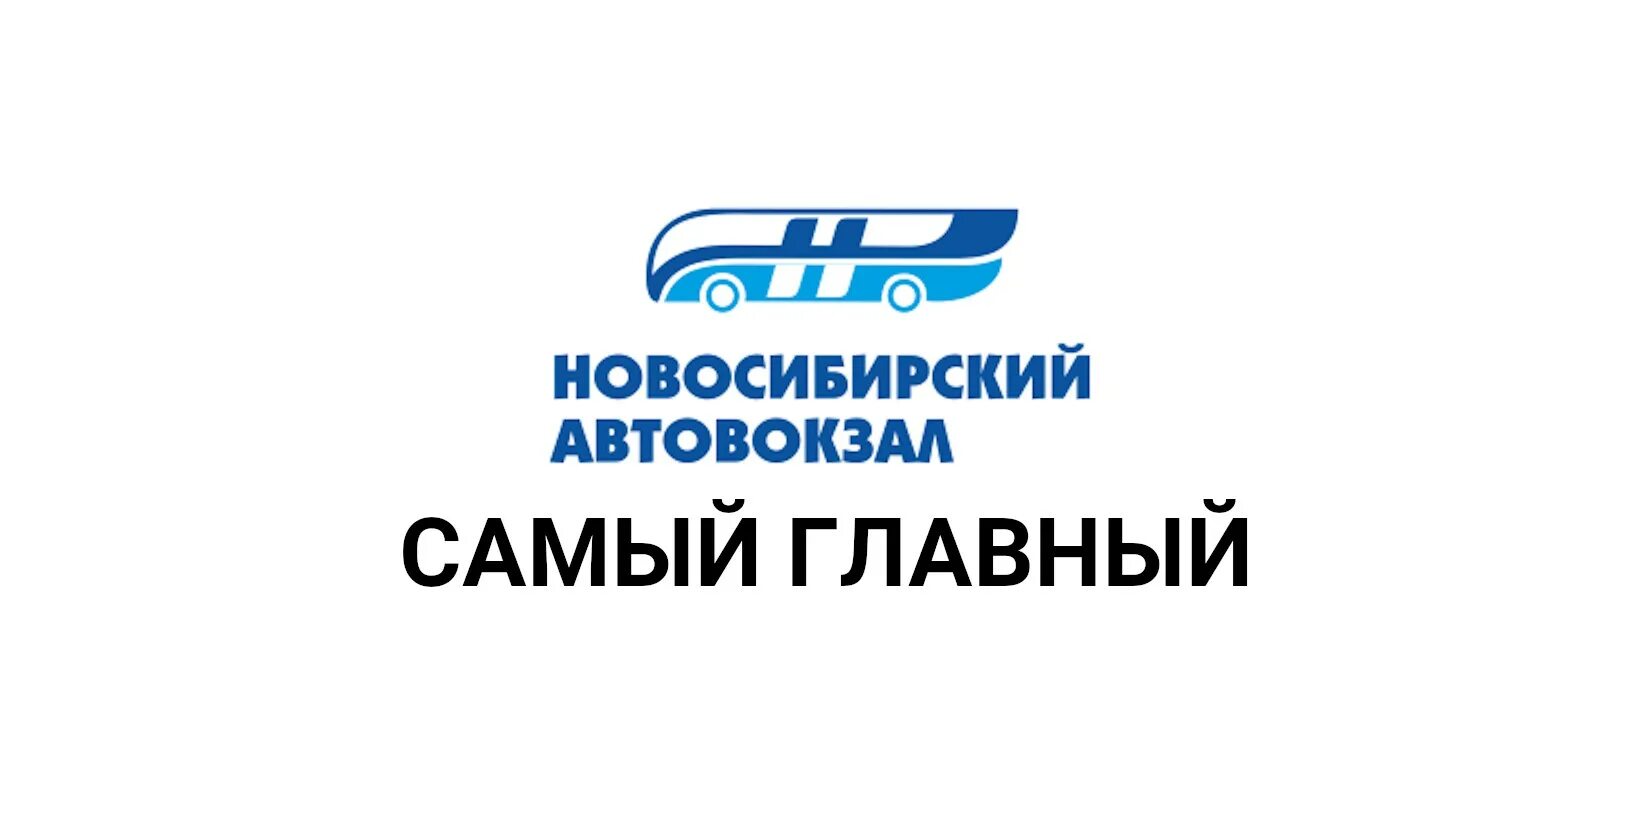 Новосибирский автовокзал главный, Новосибирск. Логотип автовокзала. Автовокзал Новосибирск картинки. Гусинобродское шоссе Новосибирск вокзал.